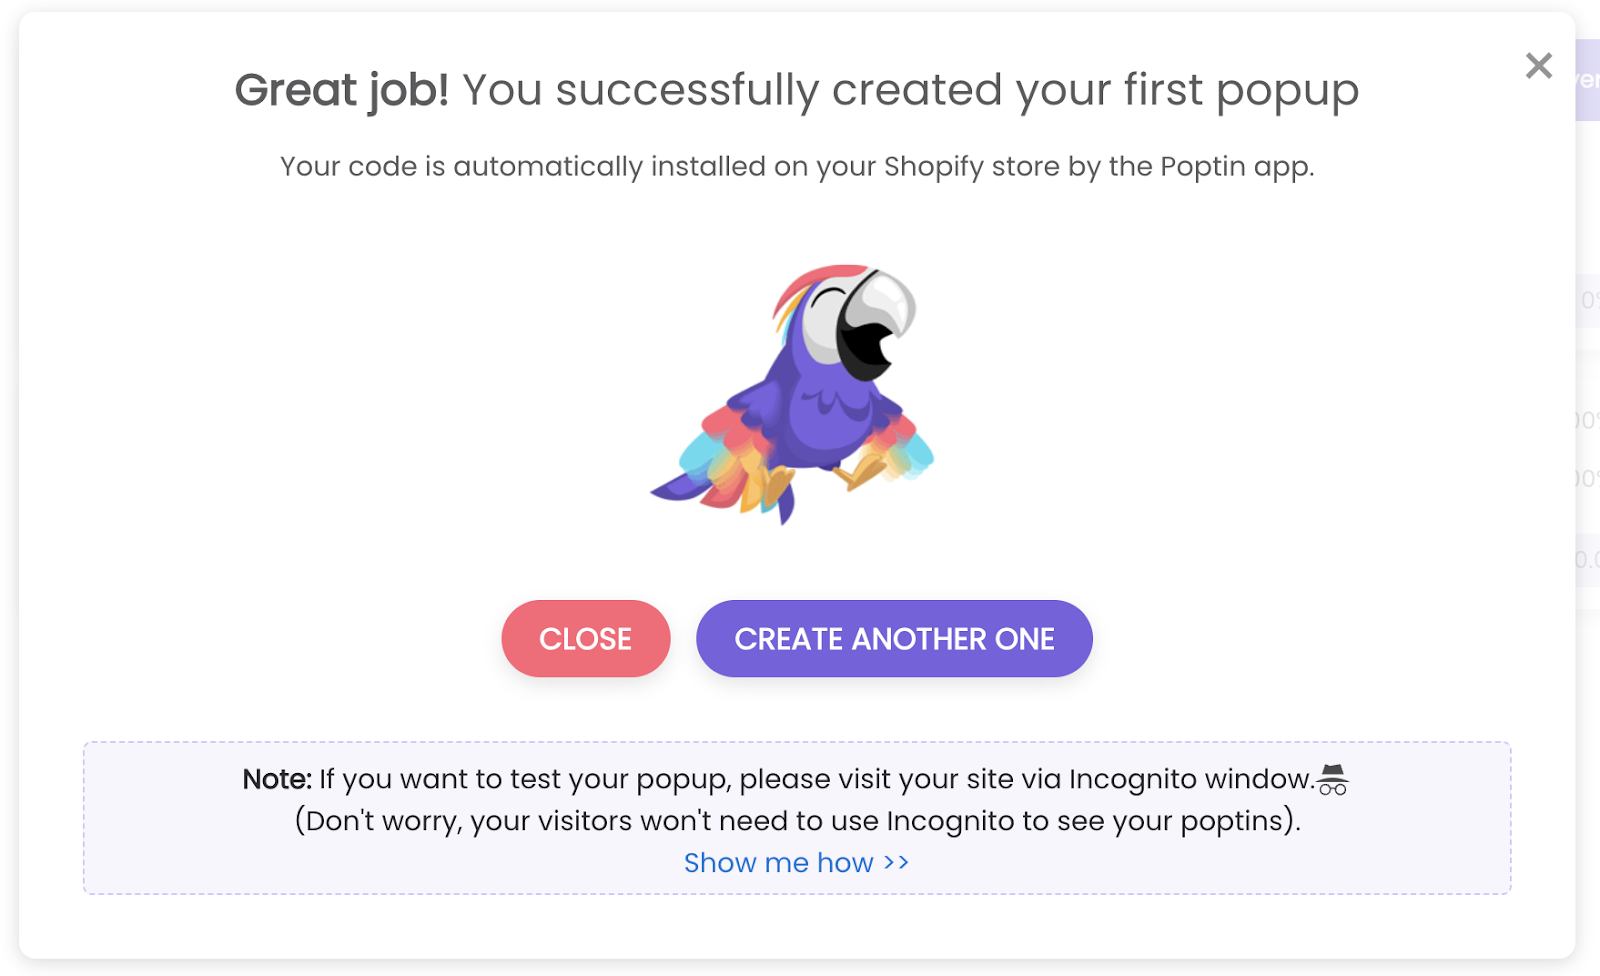 Página de sucesso para um pop-up criado usando Poptin